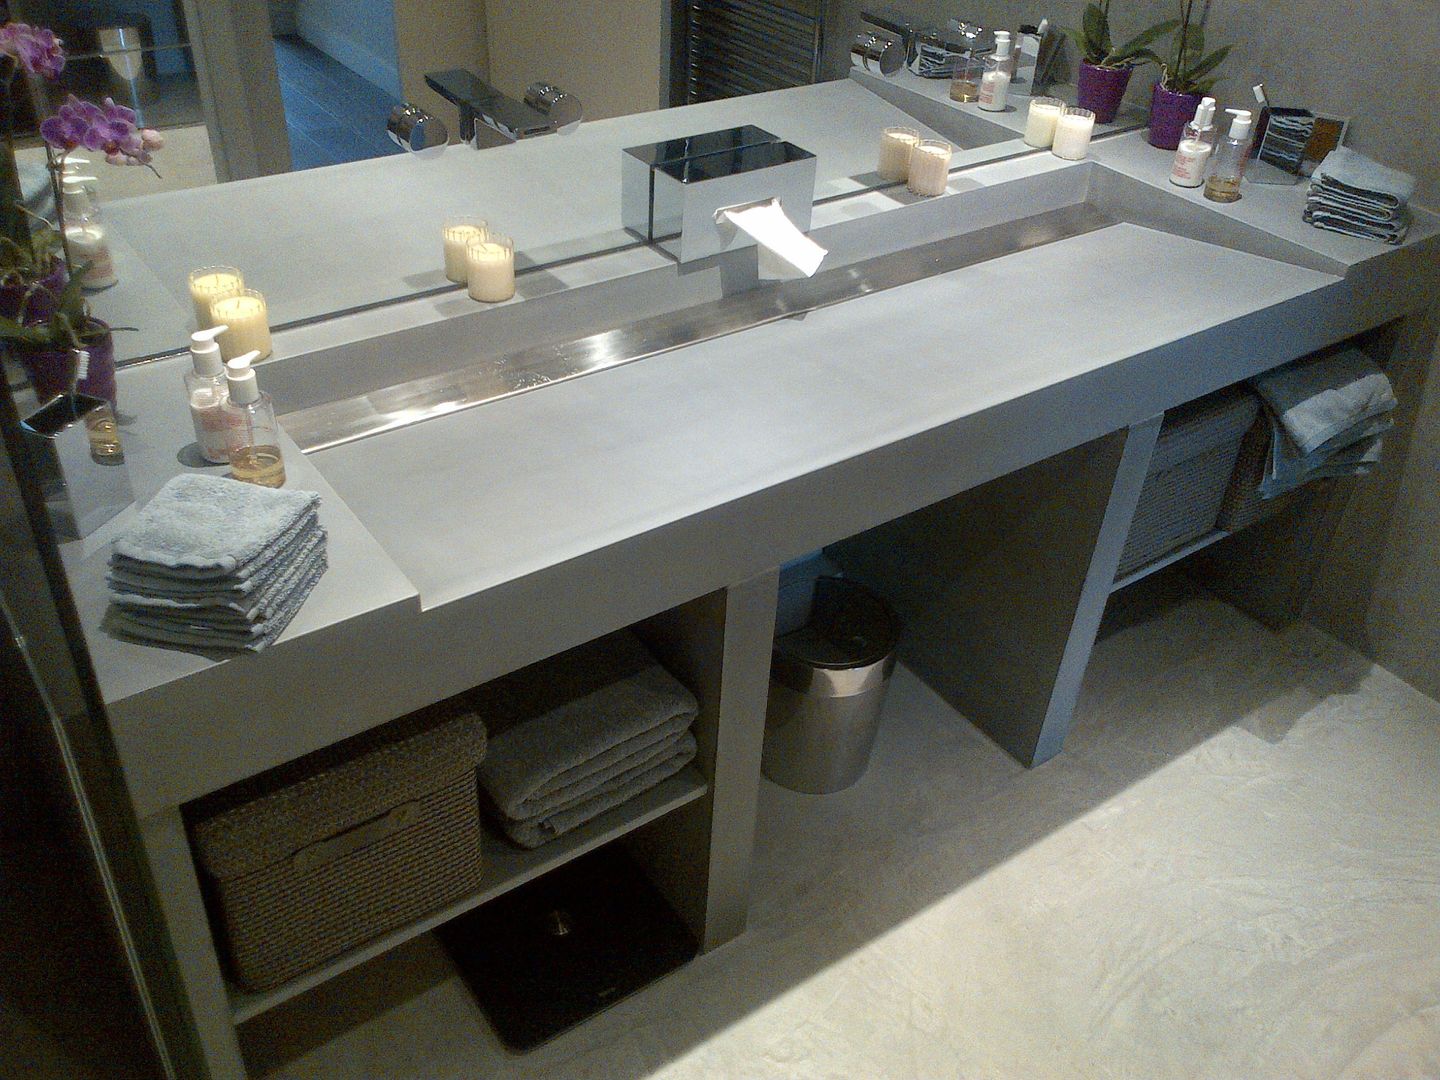 Concrete sinks & Brushed stainless steel Concrete LCDA Phòng tắm phong cách hiện đại concrete sink,concrete bathroom,bespoke sink,bespoke bathroom